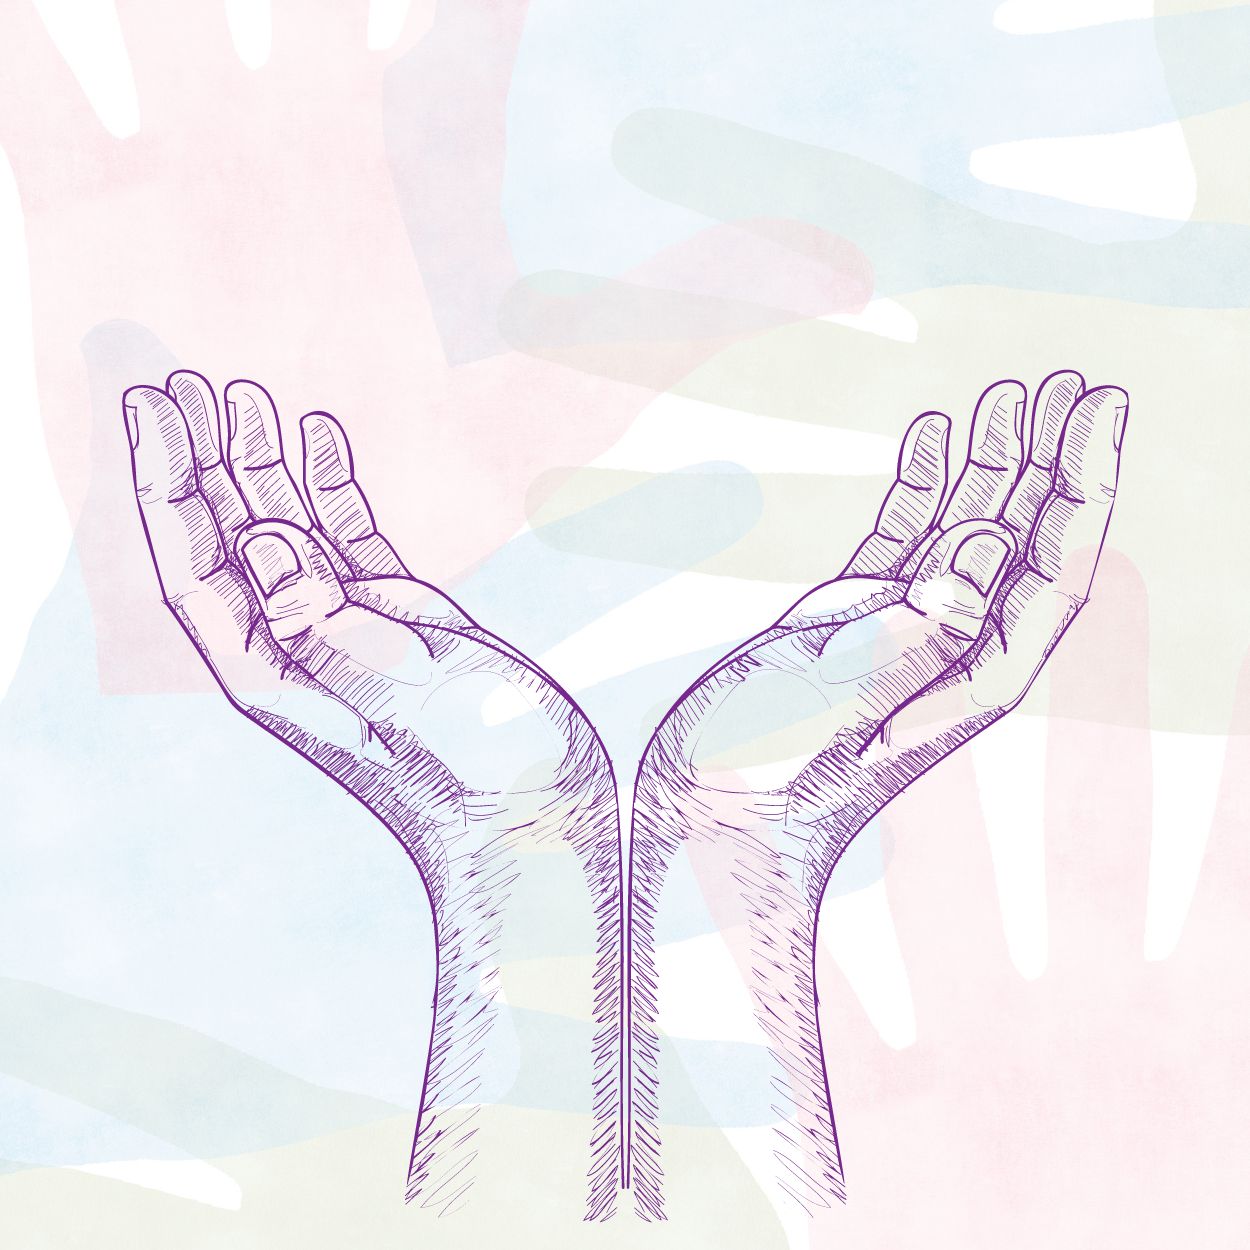 Imagen de recurso para tratamiento: ilustración de dos manos.